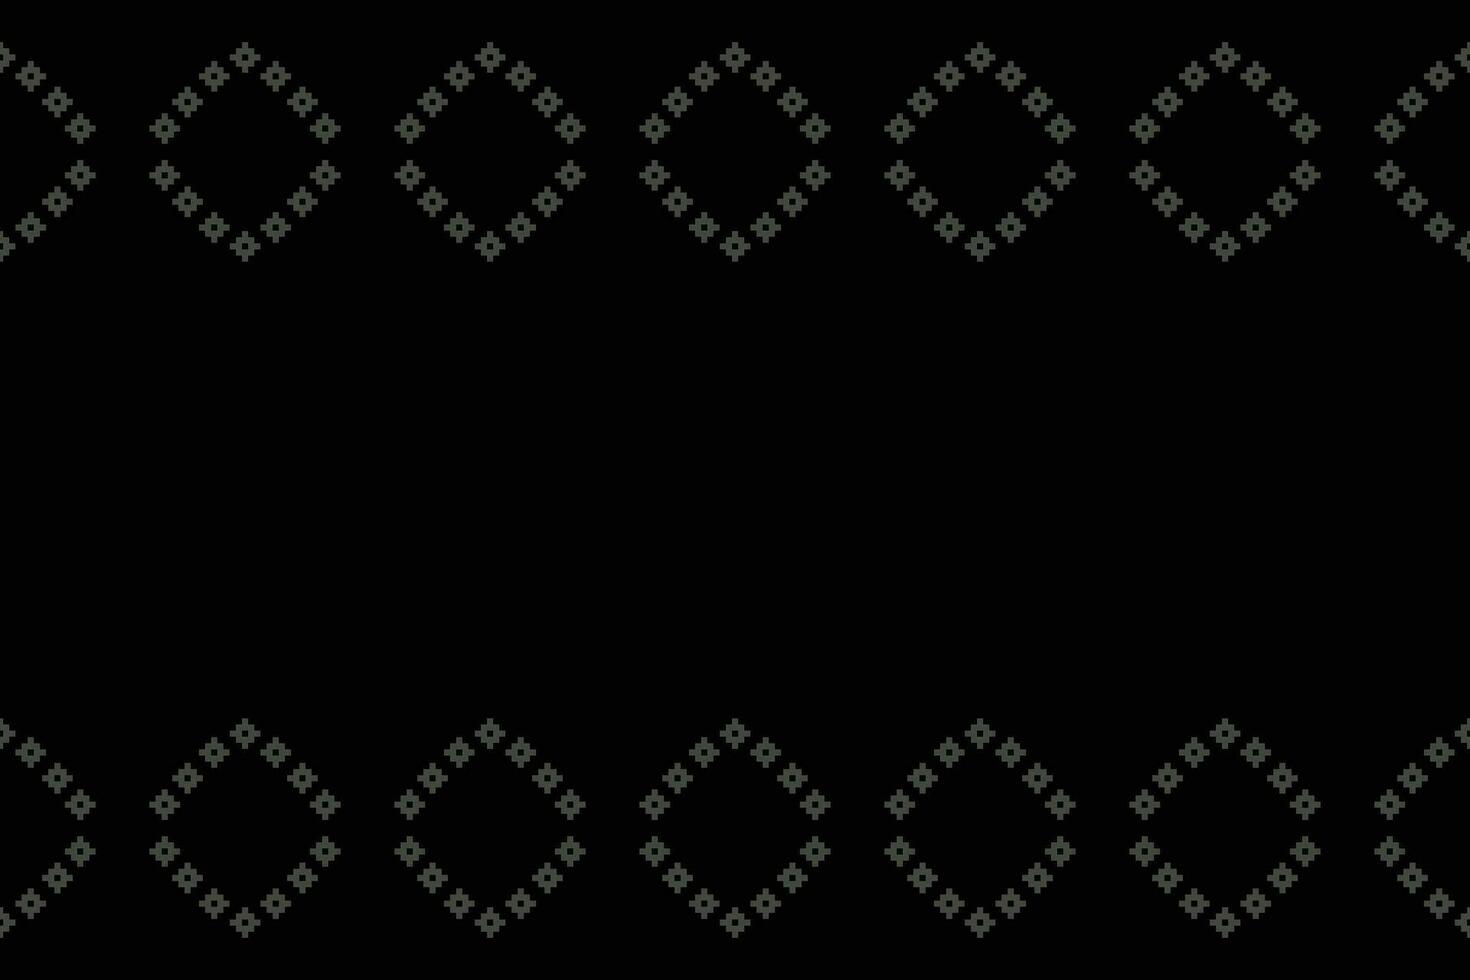 ethnique géométrique en tissu modèle traverser point.ikat broderie ethnique Oriental pixel modèle noir Contexte. abstrait, vecteur, illustration. texture, vêtements, cadre, décoration, motifs, soie fond d'écran. vecteur